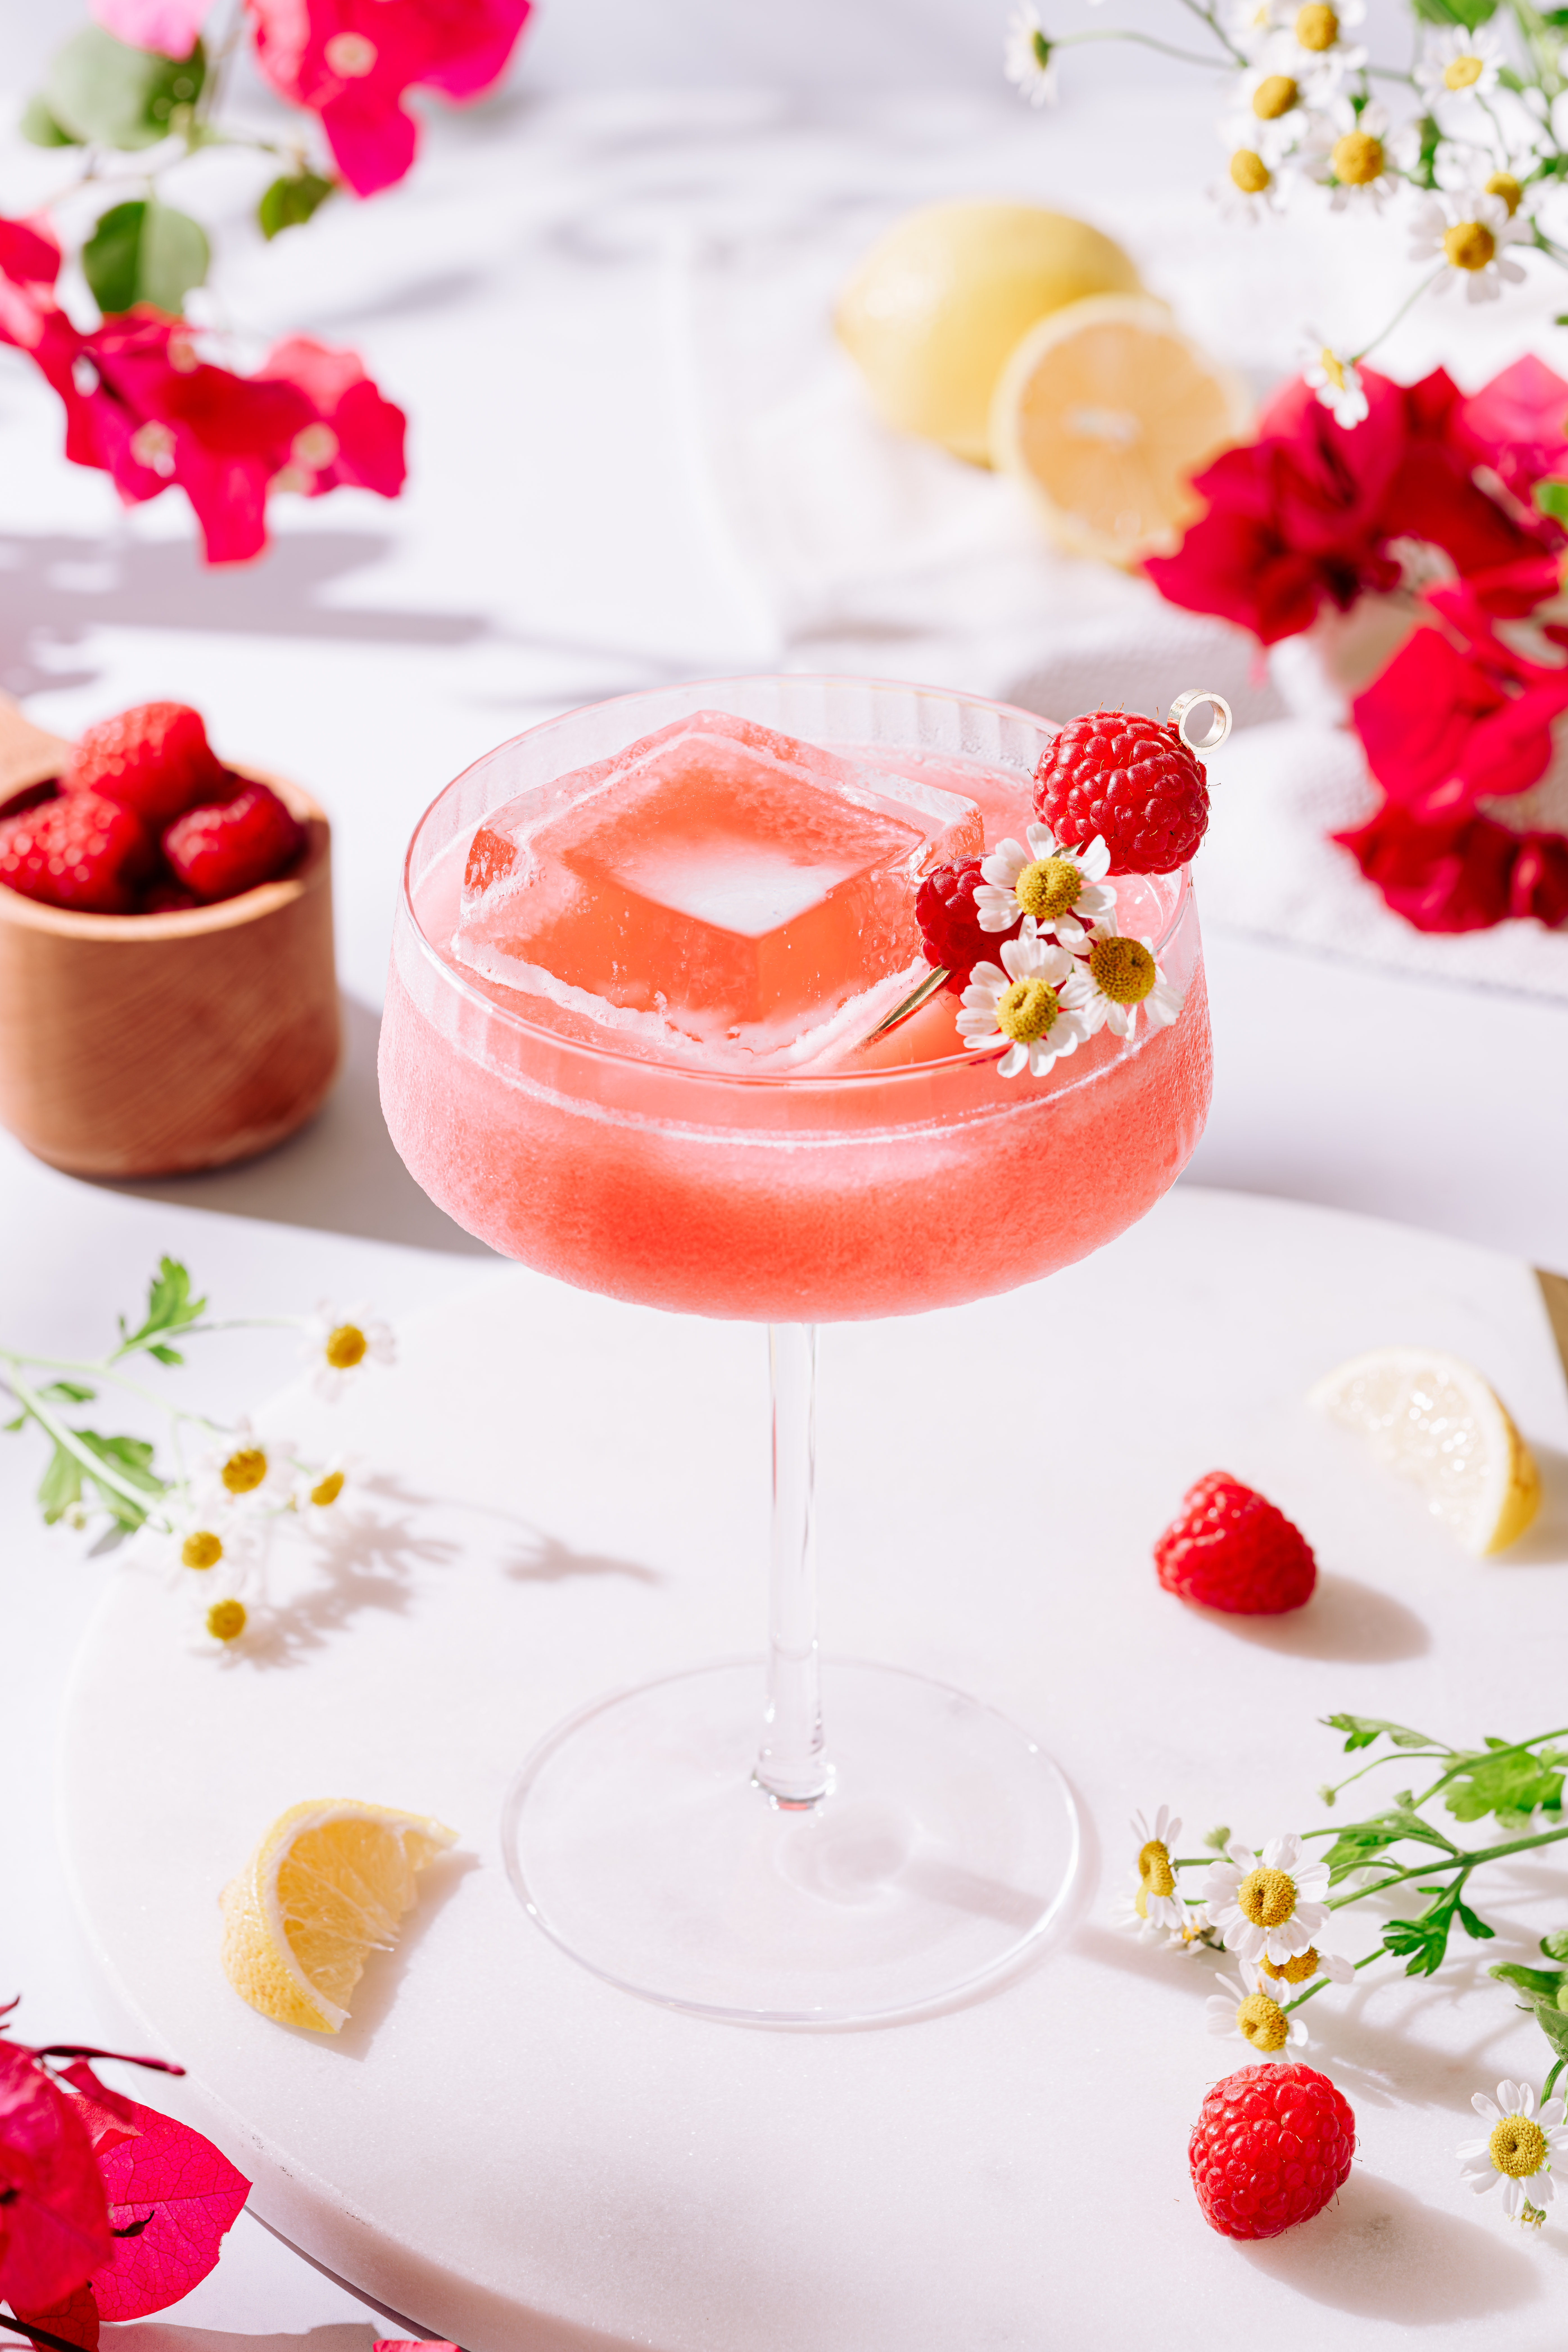 Sip on Delightful Floral Cocktails